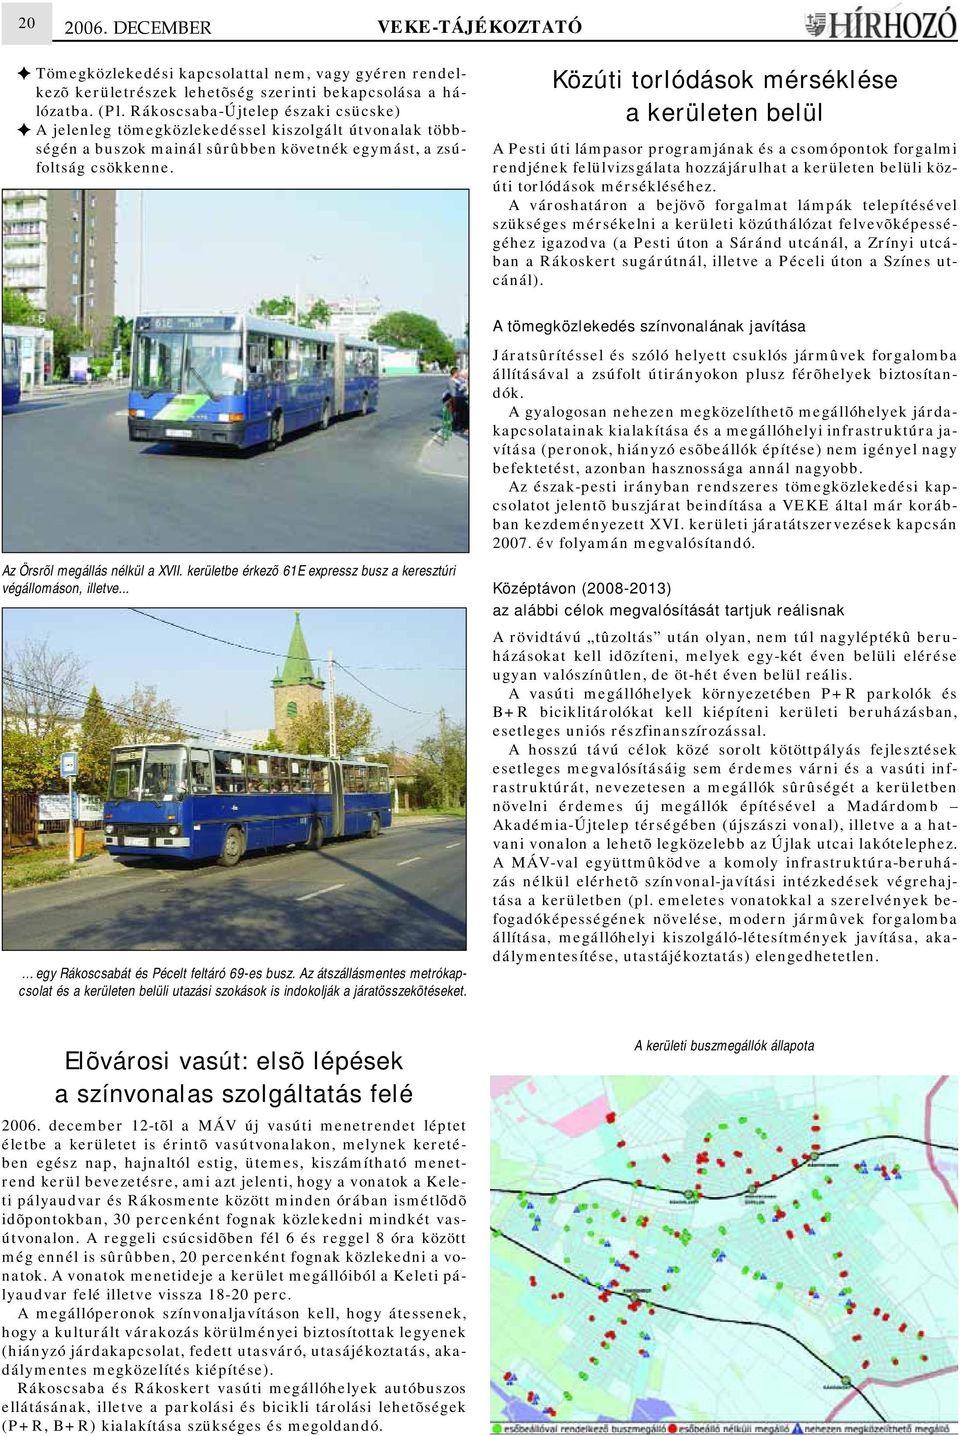 kerületbe érkezõ 61E expressz busz a keresztúri végállomáson, illetve... egy Rákoscsabát és Pécelt feltáró 69-es busz.